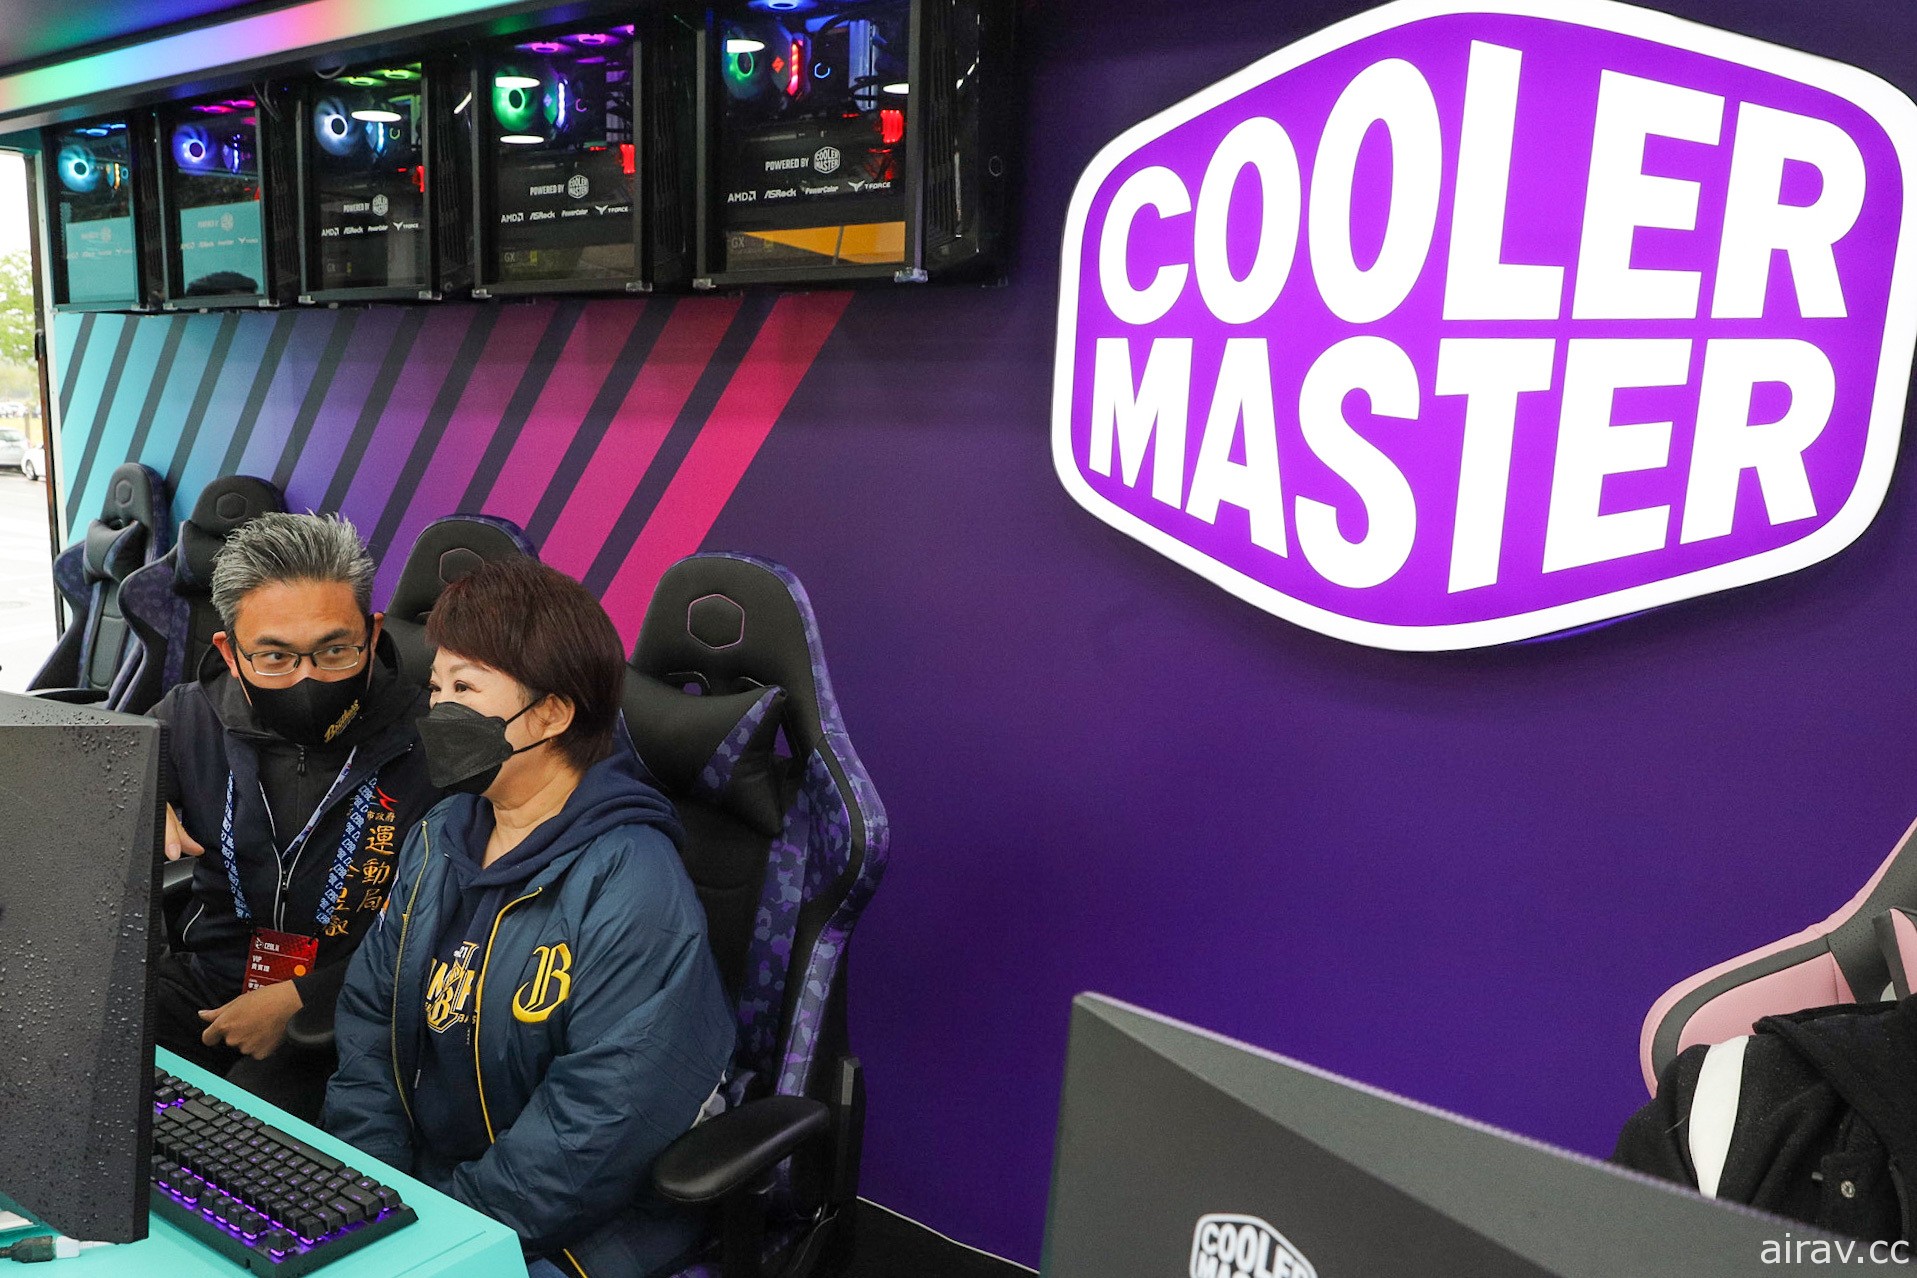 Cooler Master 遊戲體驗車「酷玩行者」前進臺中 供玩家體驗電競配備